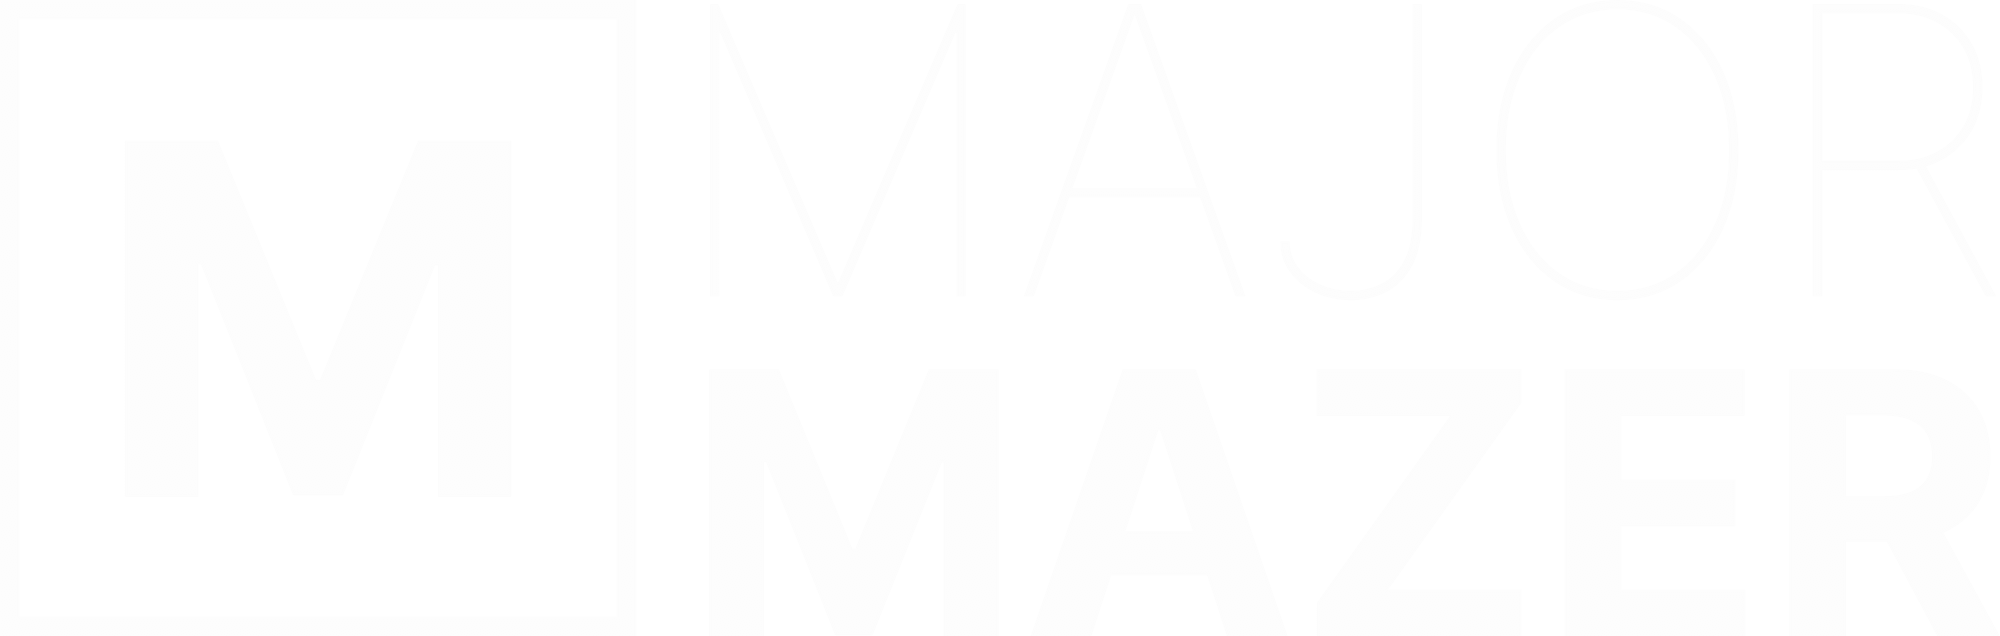 Major Mazer Logo